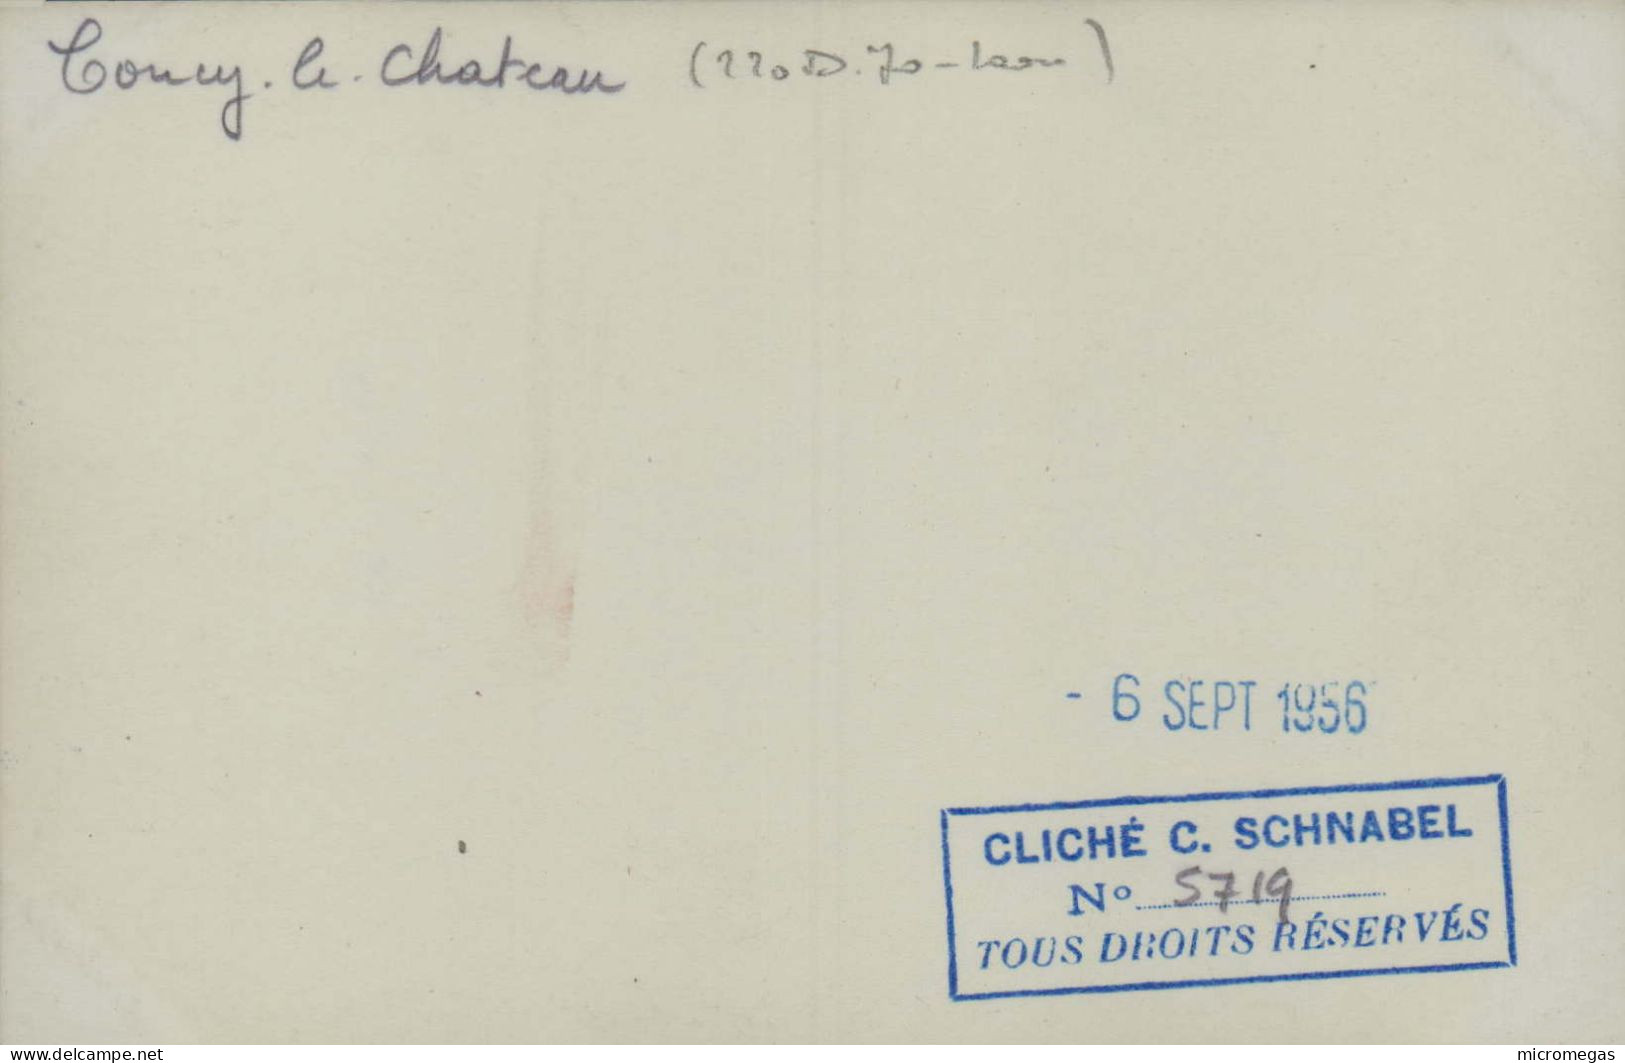 COUCY-le-CHÂTEAU - 220-D-70 Laon - Cliché C. Schnabel, 6 Sept. 1956 - Treni